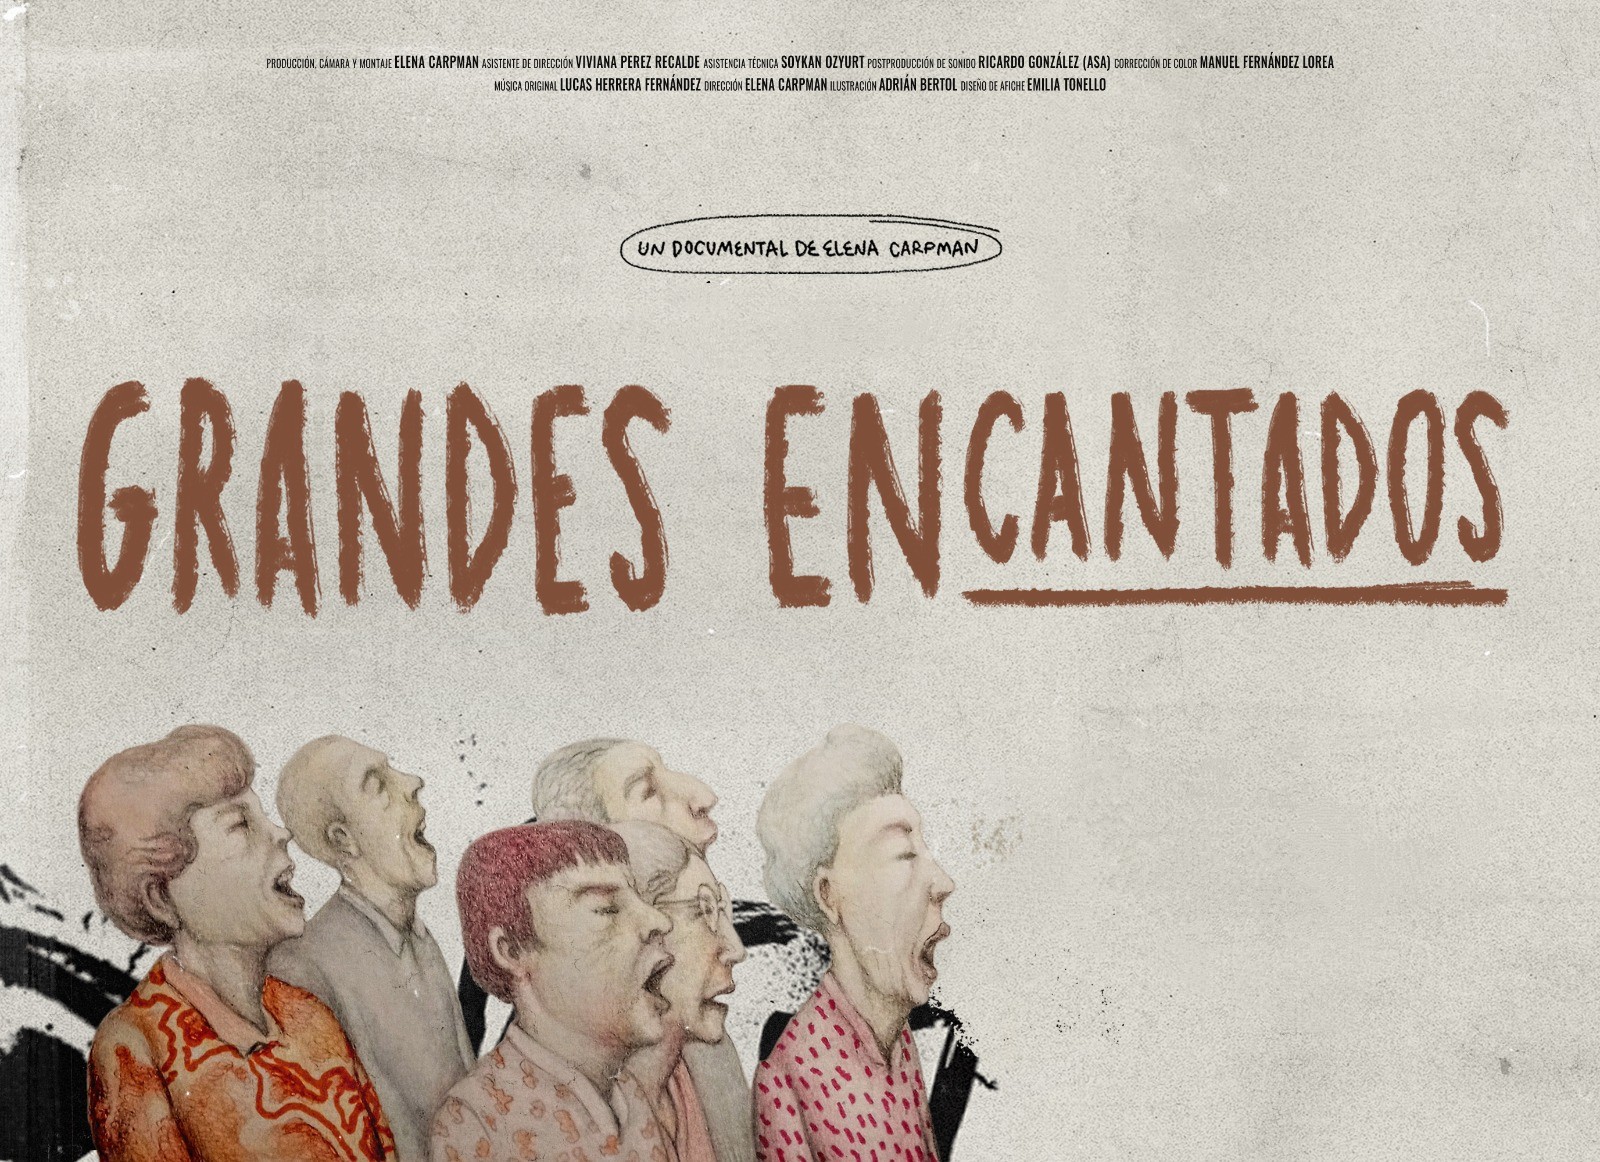 Cine en en el Centro Cultural Ituzaingó, se proyectara la película “Grandes encantados”